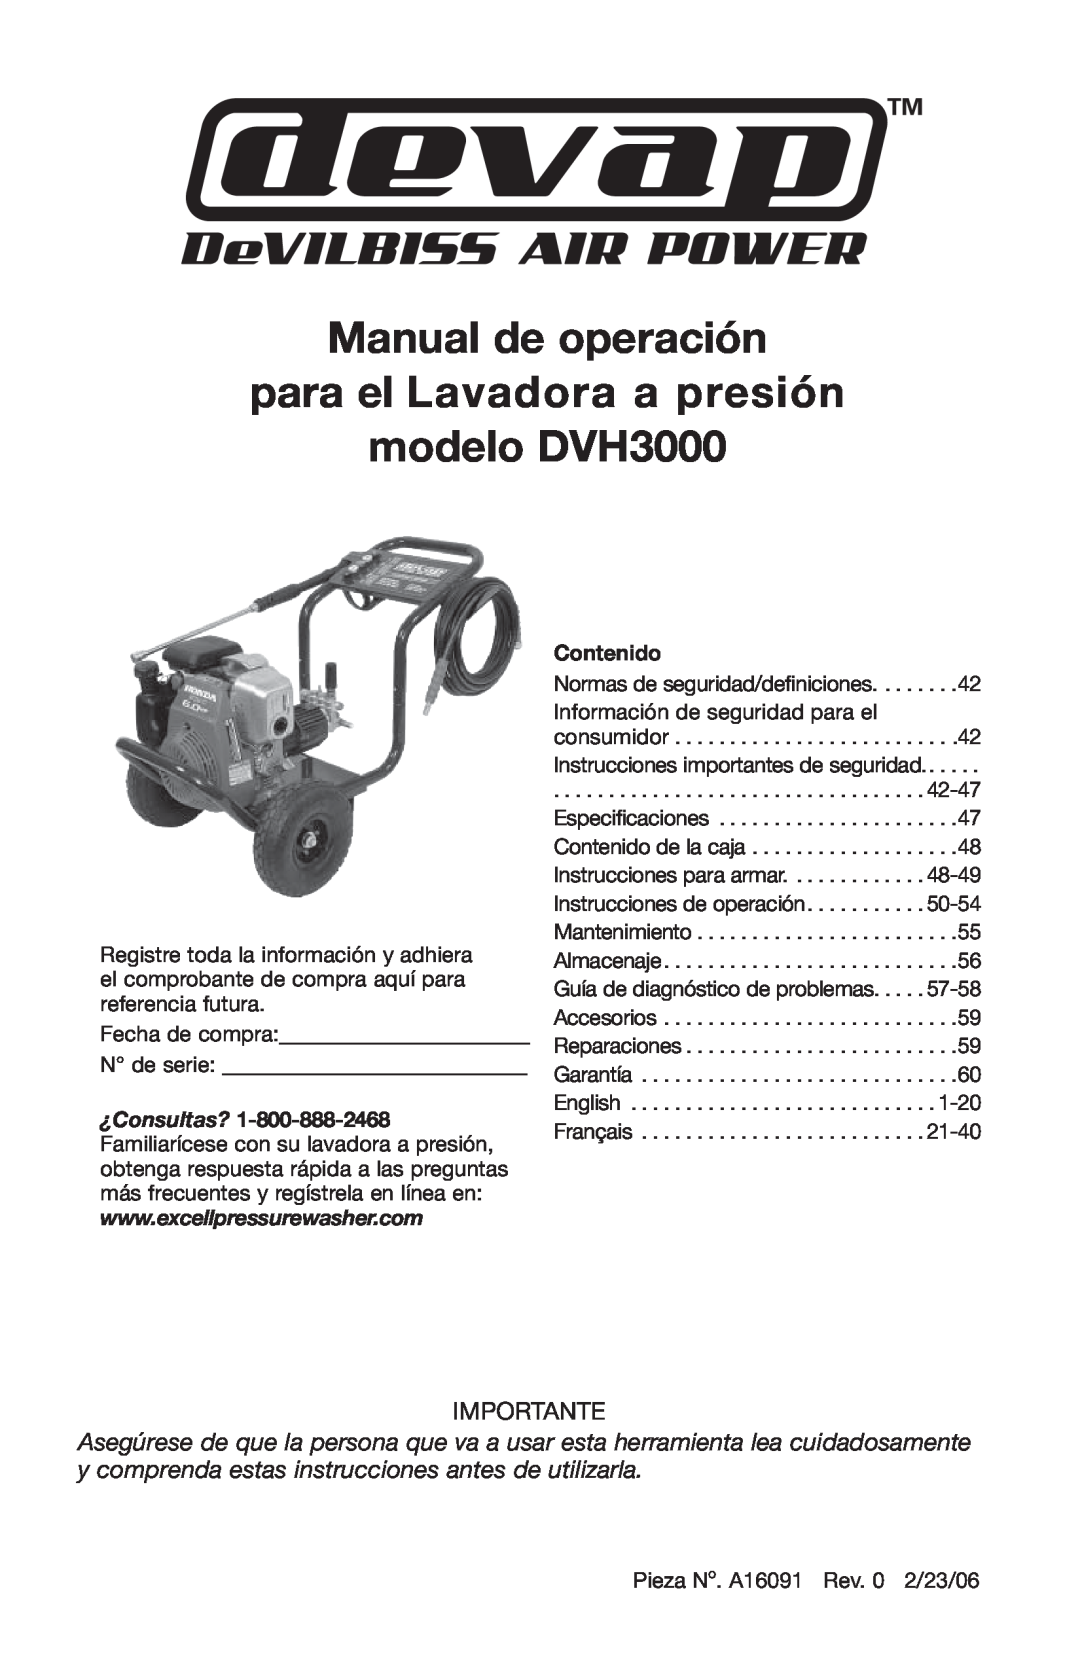 DeVillbiss Air Power Company A16091 Manual de operación para el Lavadora a presión modelo DVH3000, Importante 